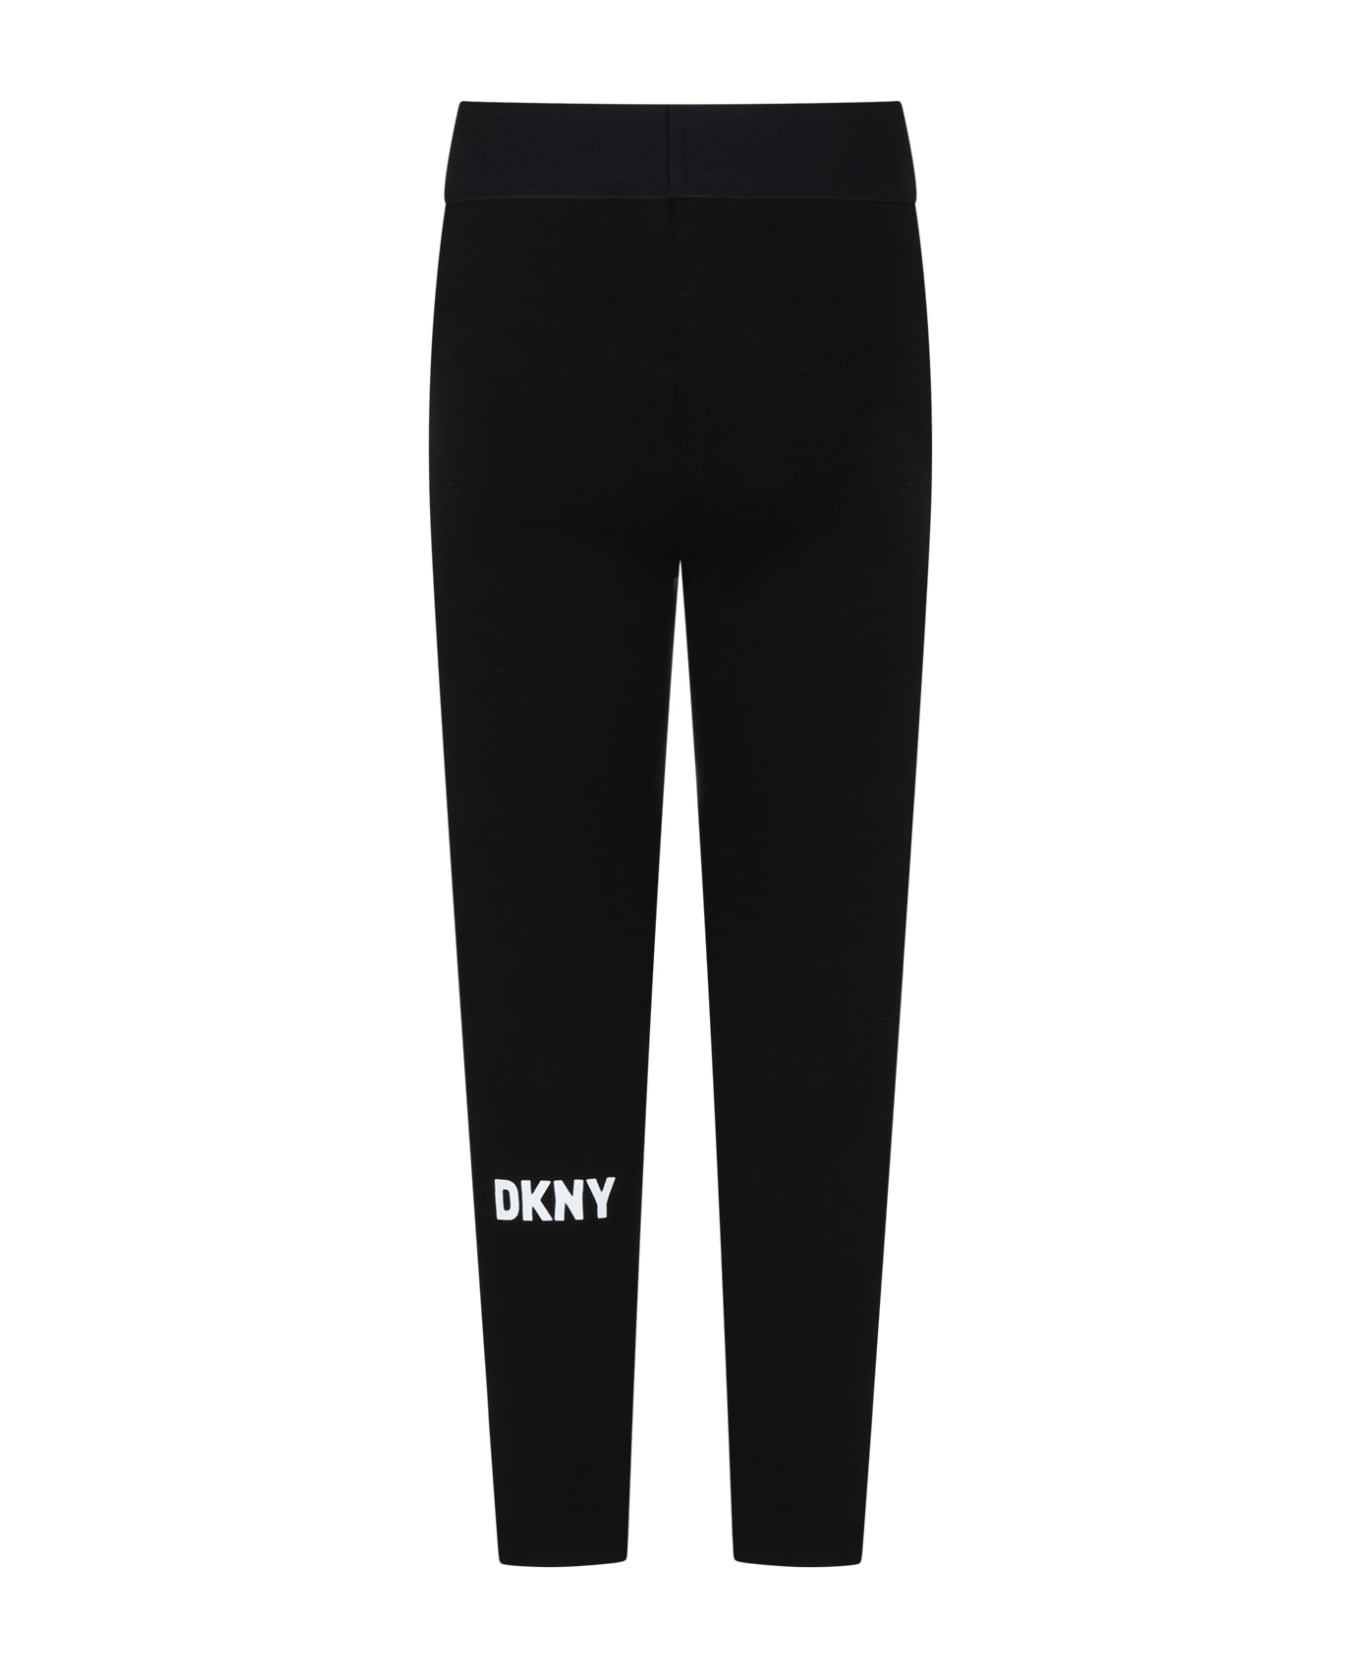 DKNY Black Leggings For Girl With Logo - Black ボトムス